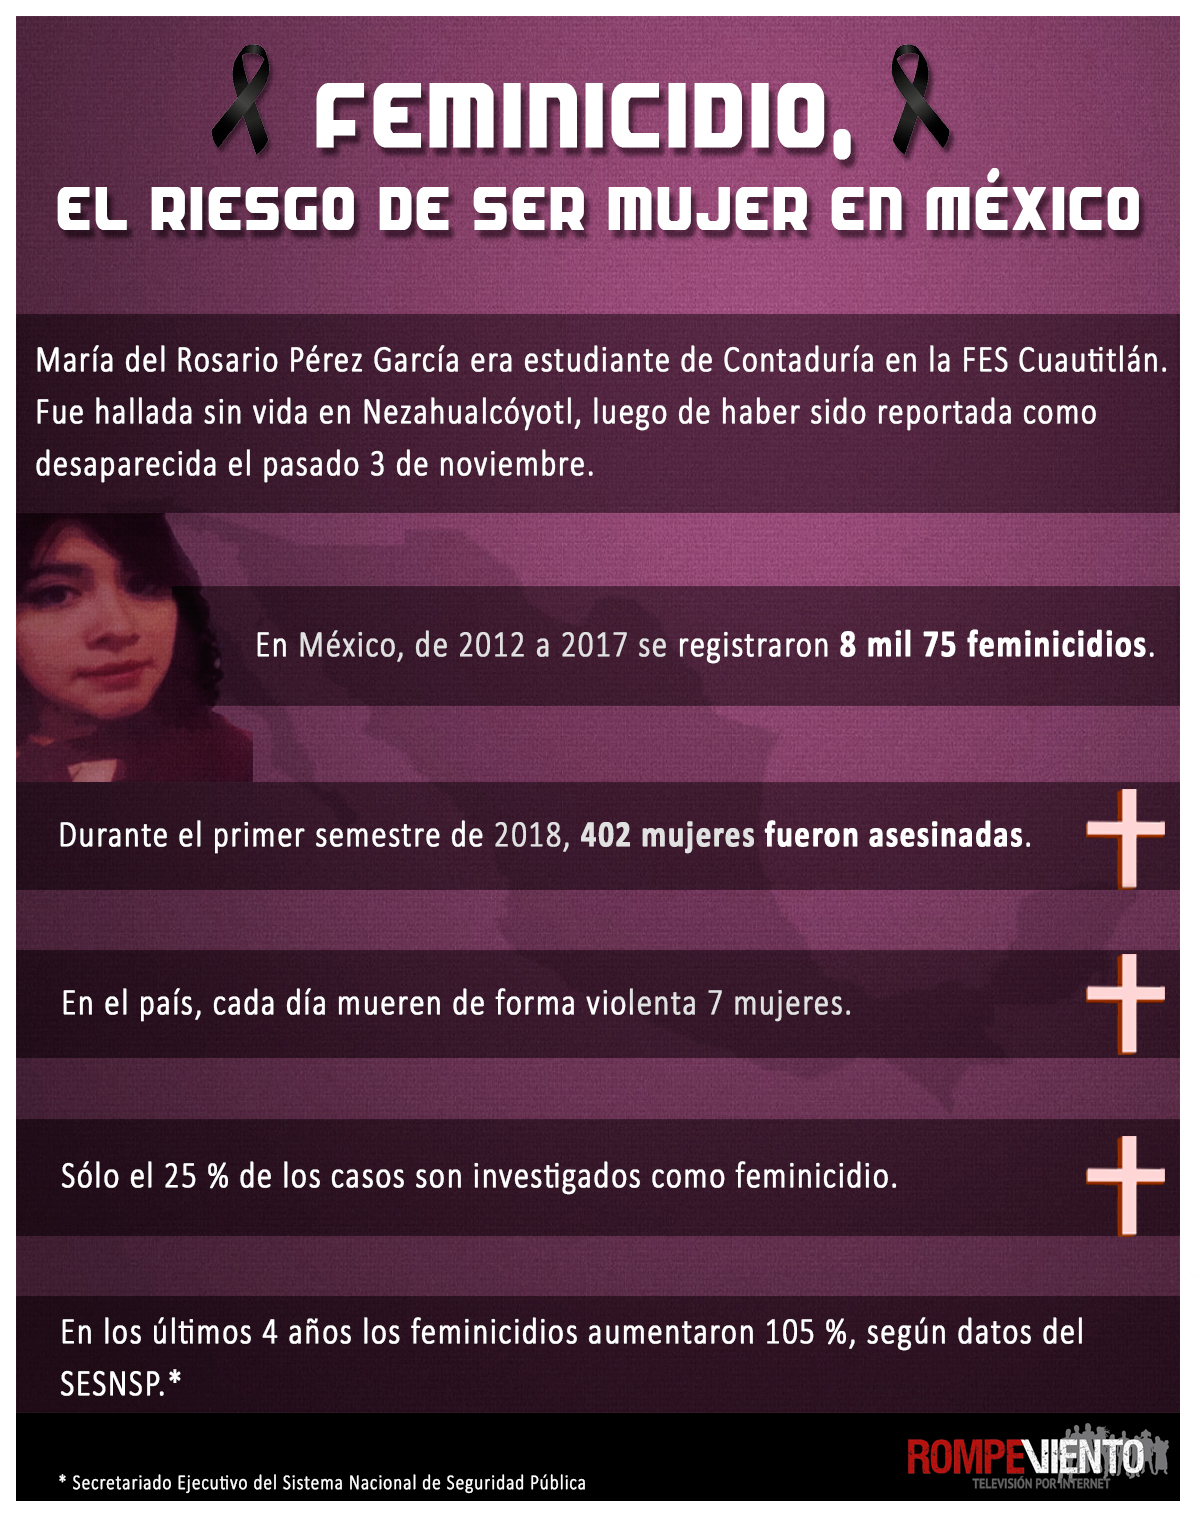 Feminicidio, el riesgo de ser mujer en México